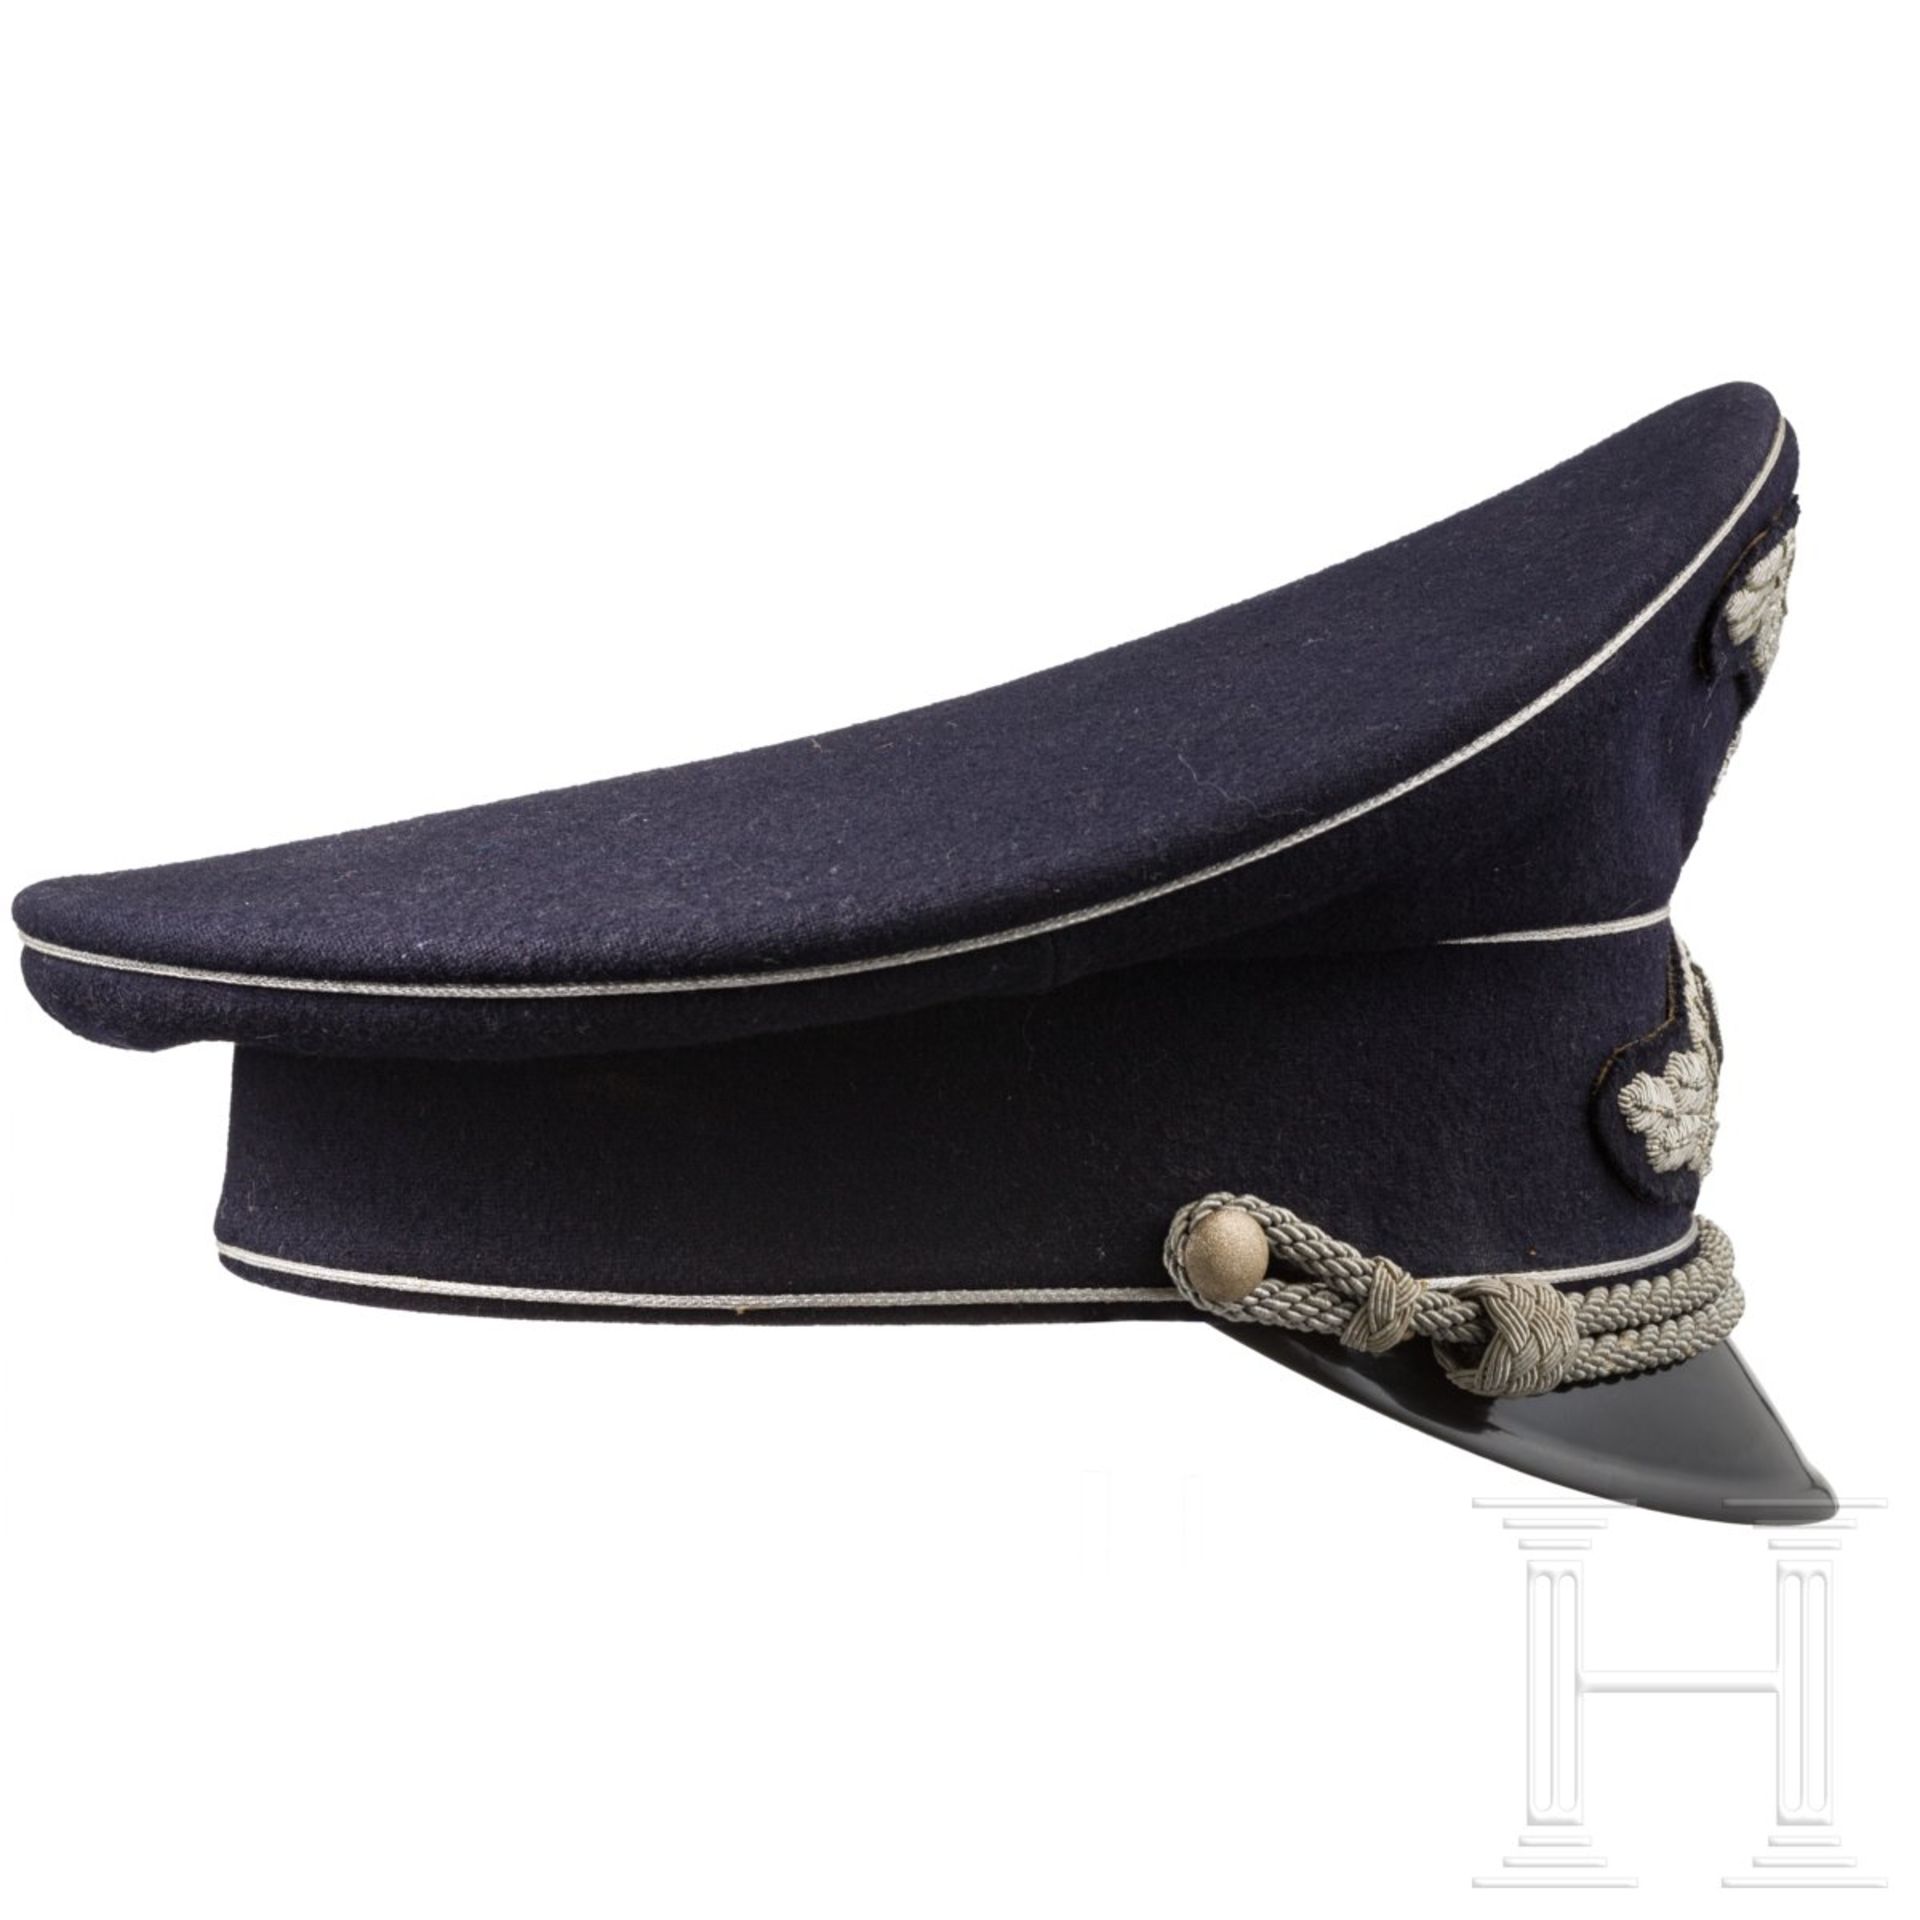 Schirmmütze zur dunkelblauen Uniform für Staatsbeamte bis Legationsrat - Bild 3 aus 7